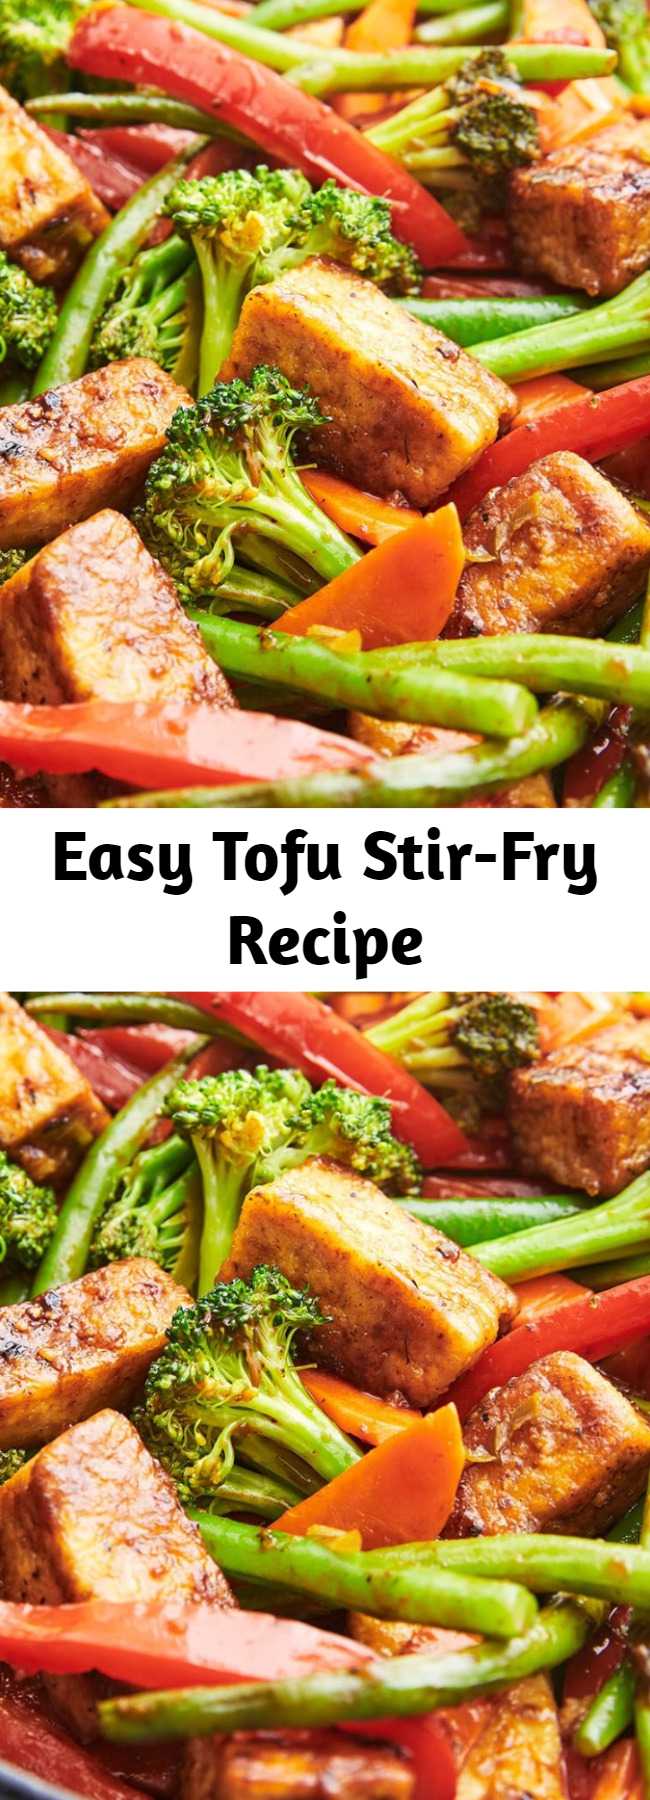 Easy Tofu Stir-Fry Recipe